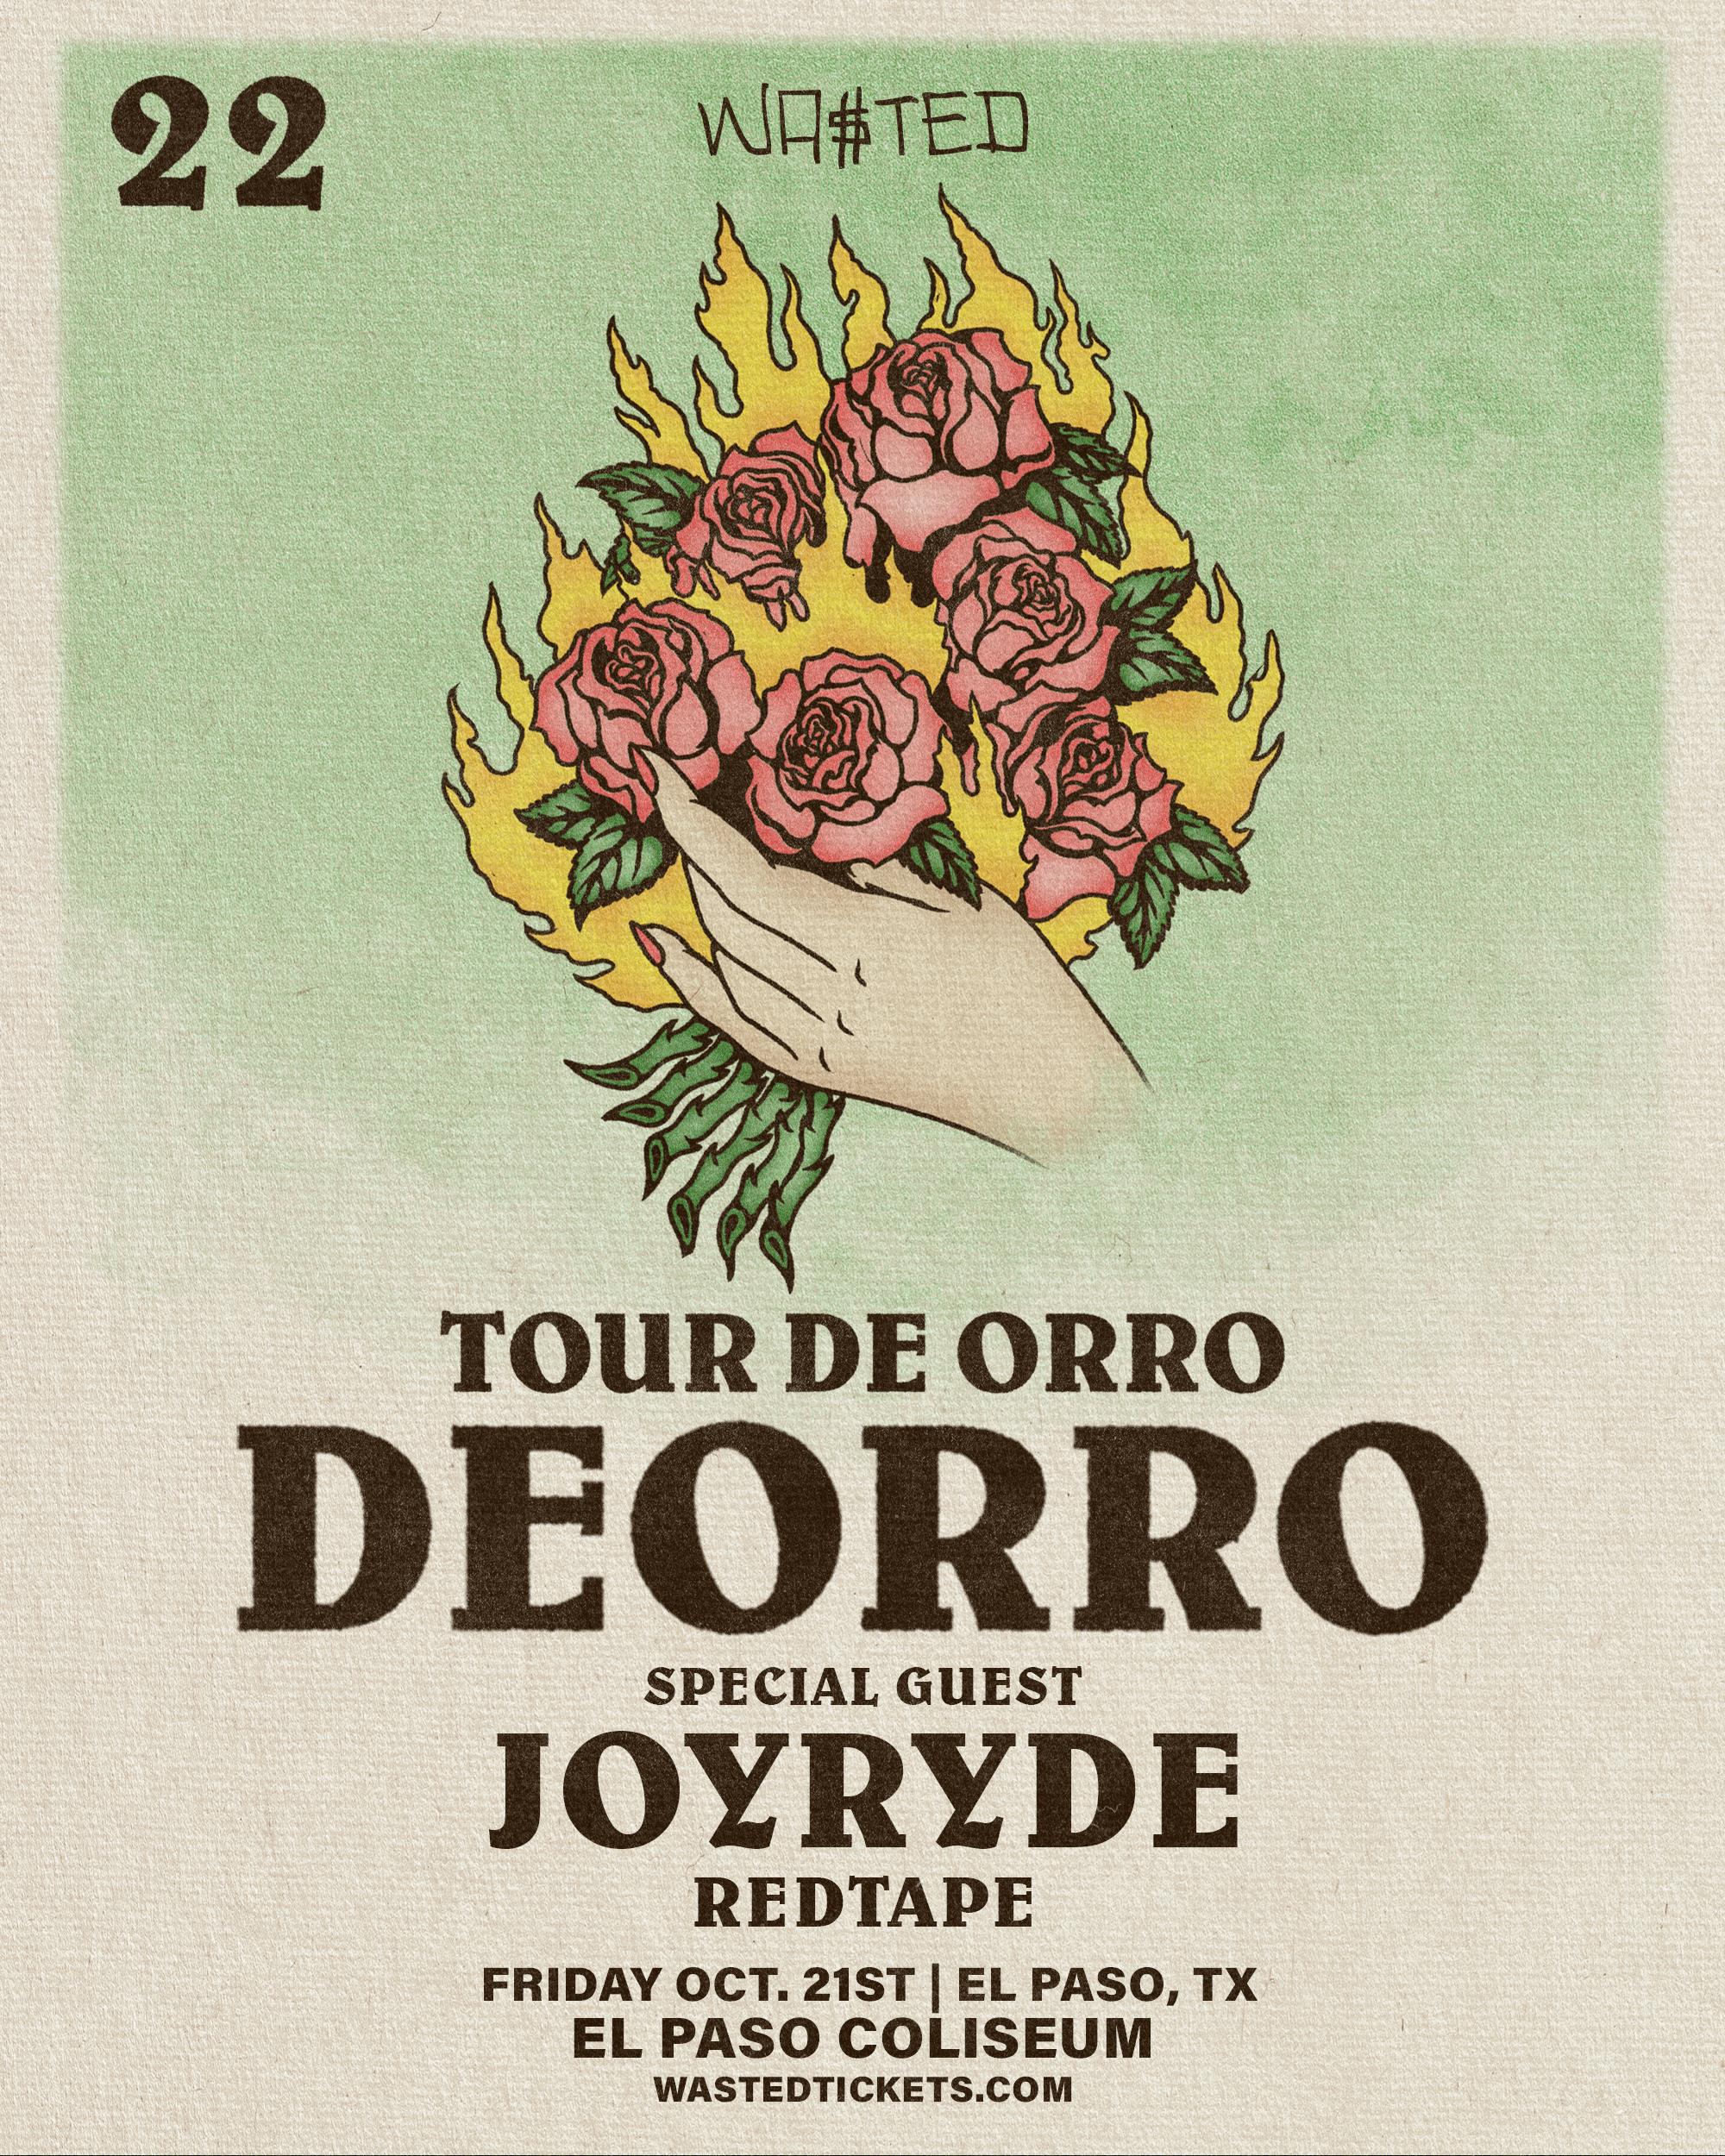 Buy Tickets to Deorro Tour De Orro El Paso, TX in el paso on Oct 21